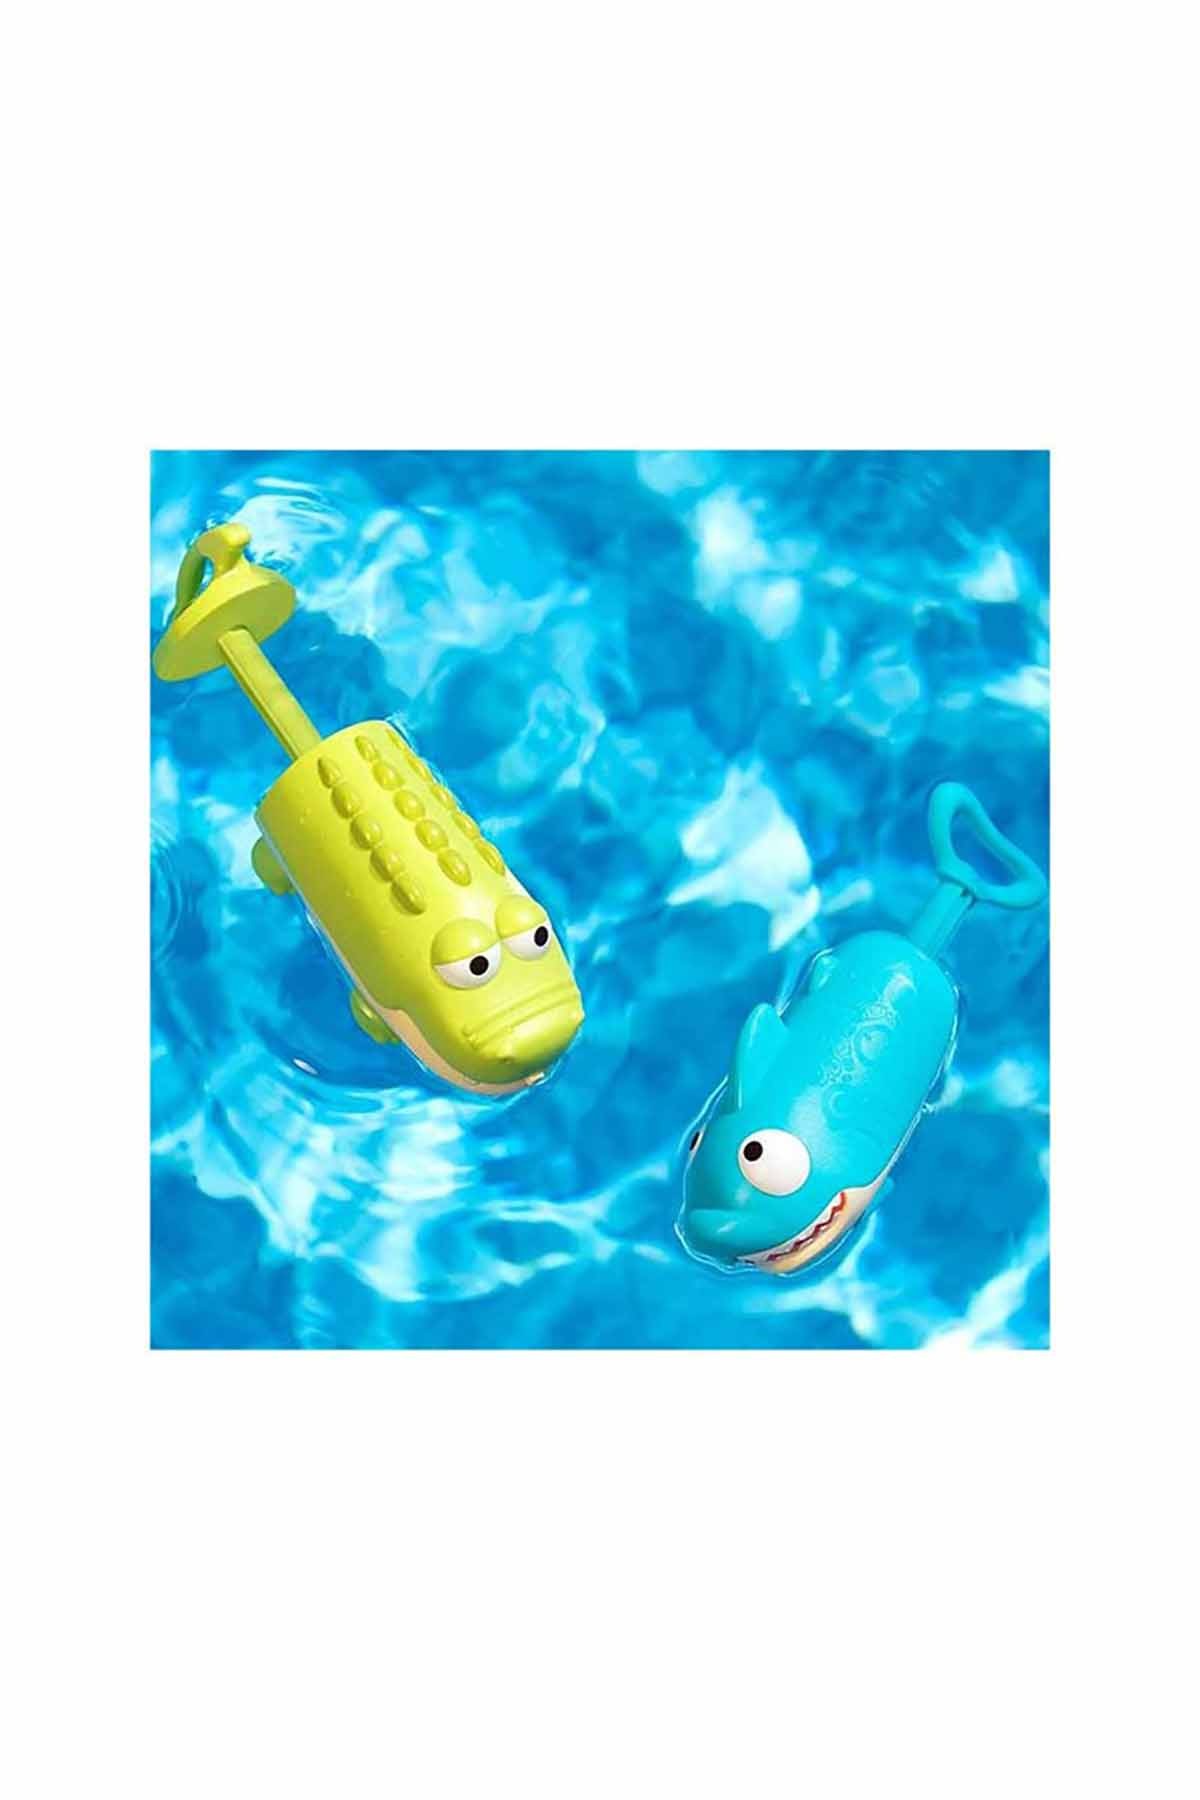 B.Toys Eğlenceli Su Tabancası Timsah ve Köpek Balığı